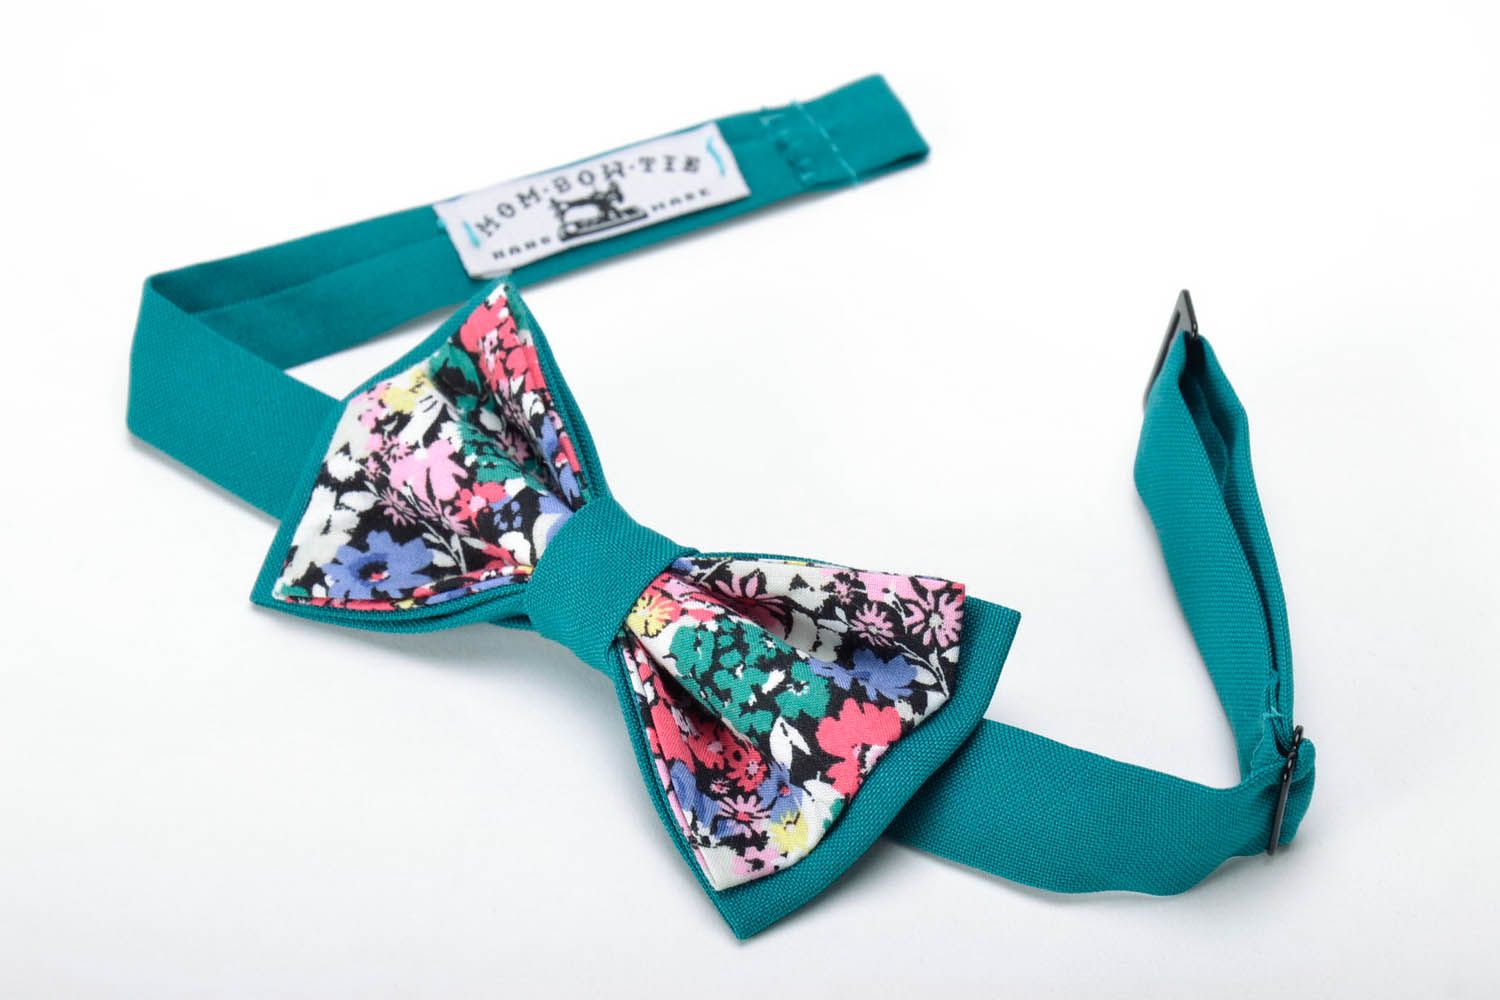 Turquoise bow tie photo 2